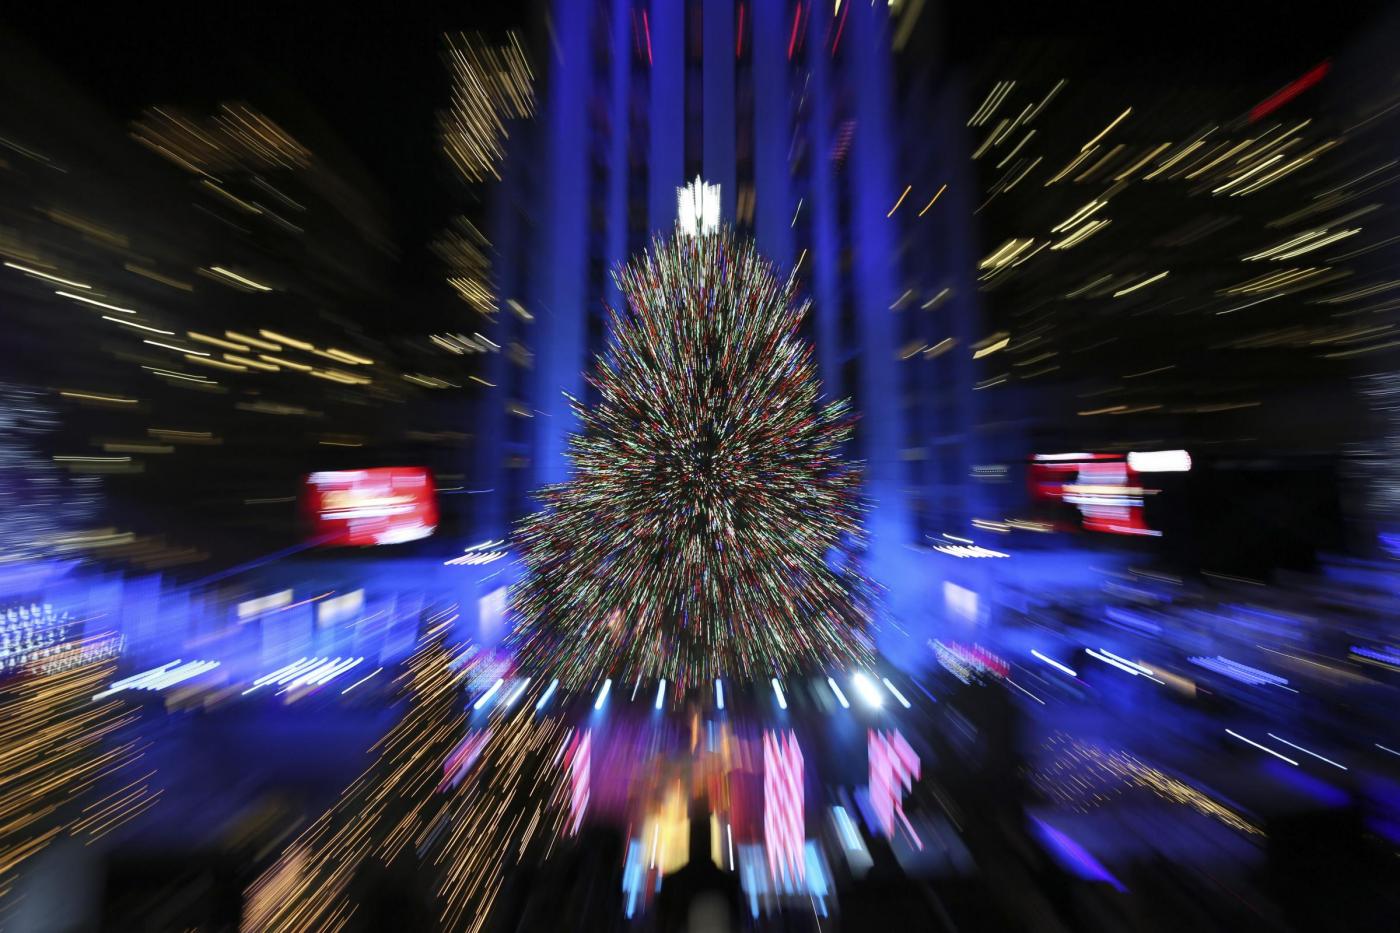 New York albero Natale Rockefeller center